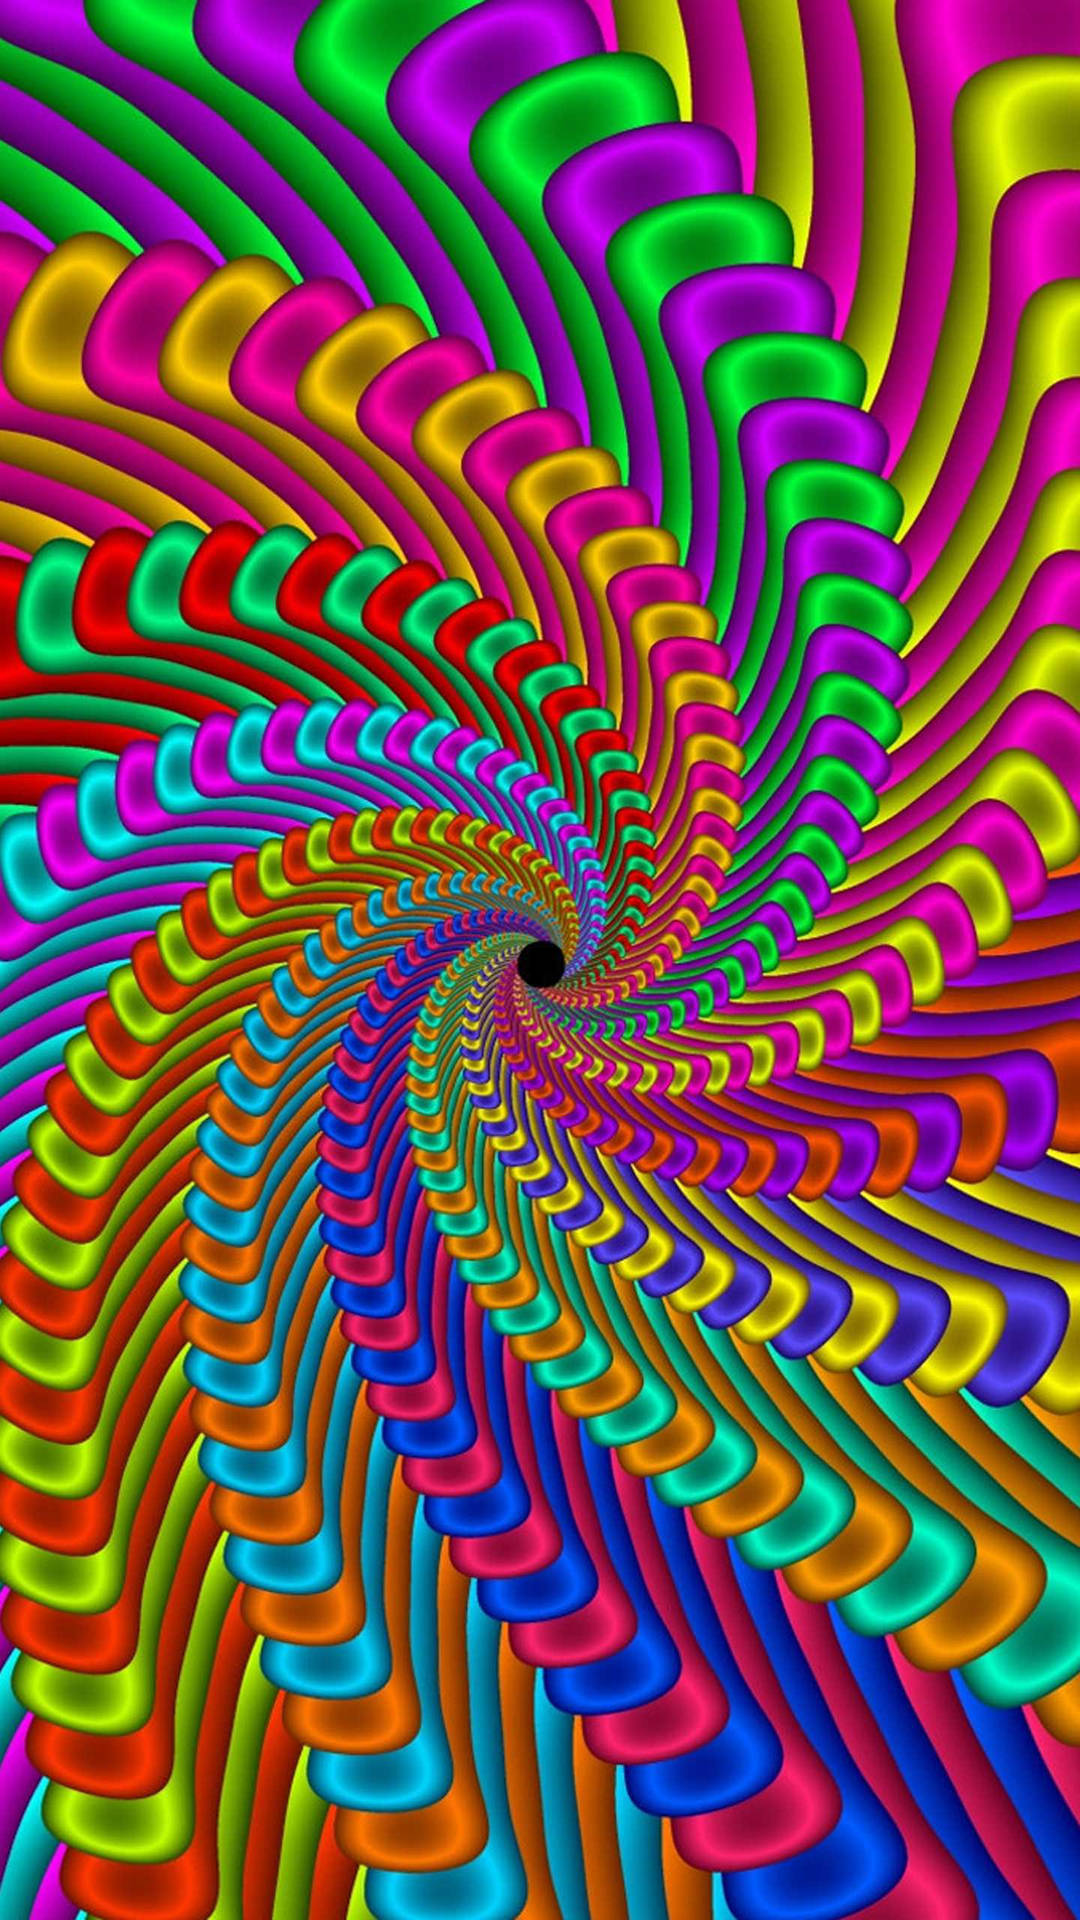 Unmotivo A Spirale Colorato Su Uno Sfondo Dai Colori Dell'arcobaleno Sfondo